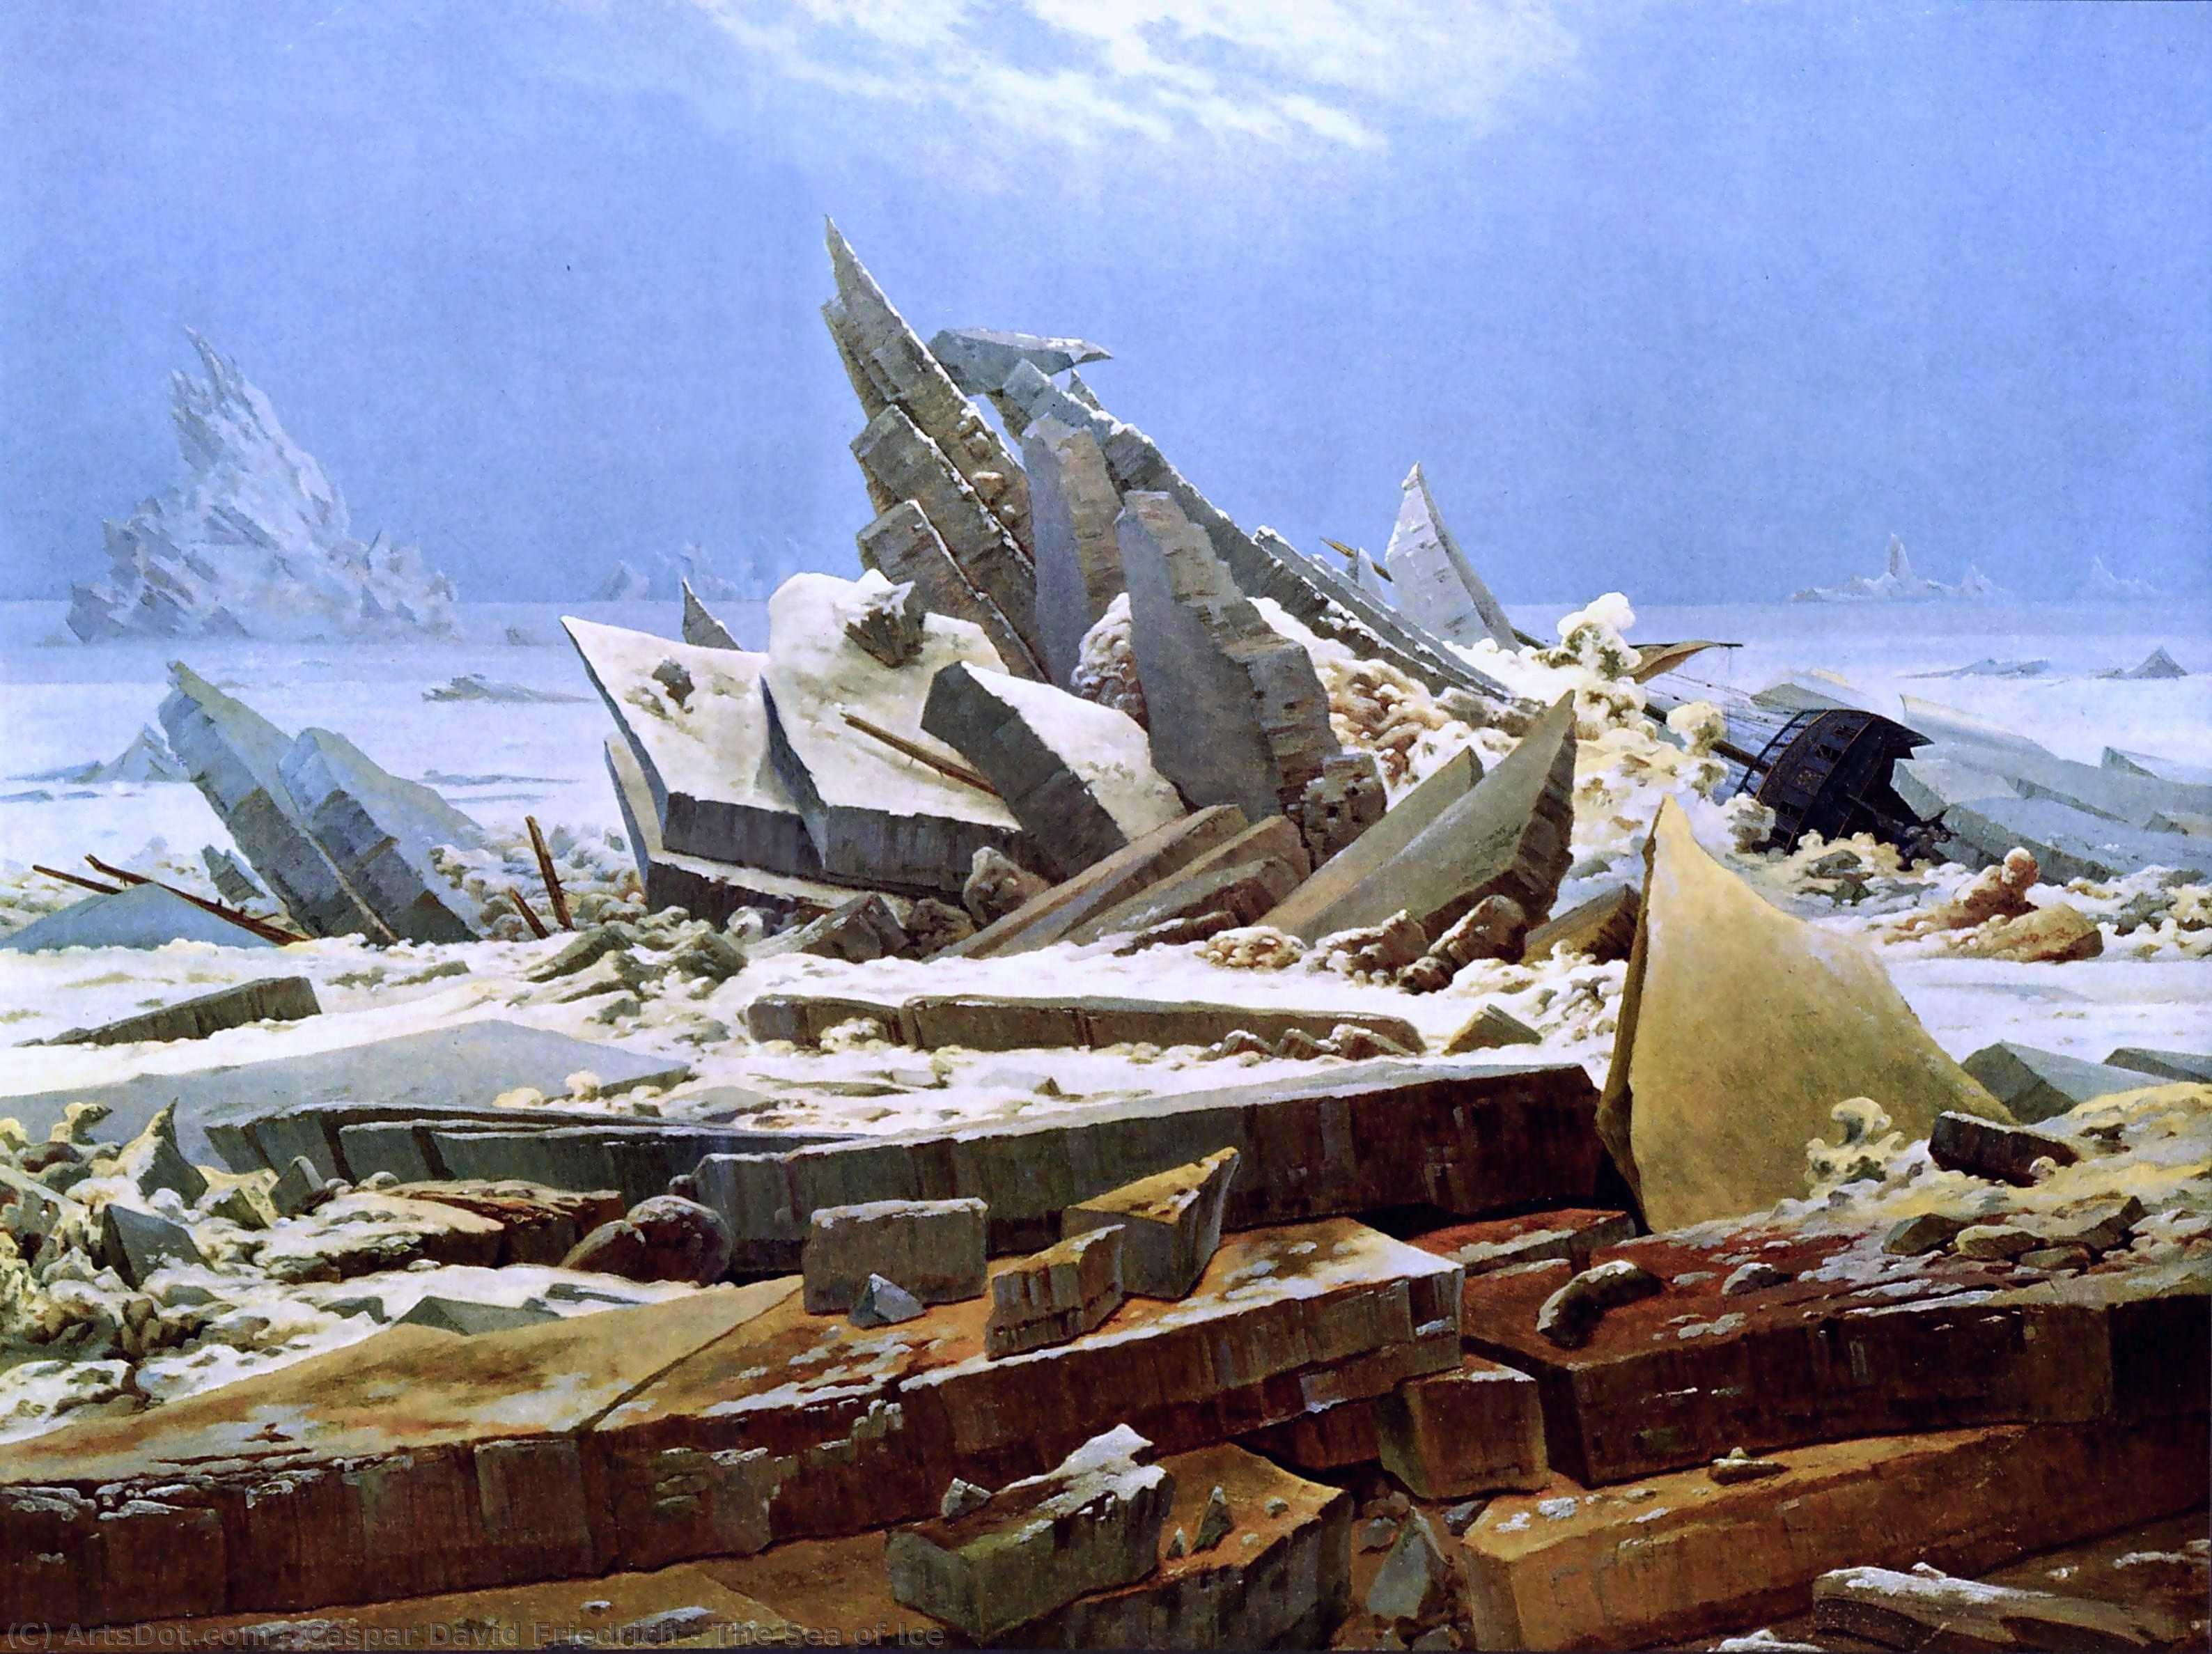 Achat Réplique De Peinture La mer de glace, 1824 de Caspar David Friedrich (1774-1840, Germany) | ArtsDot.com